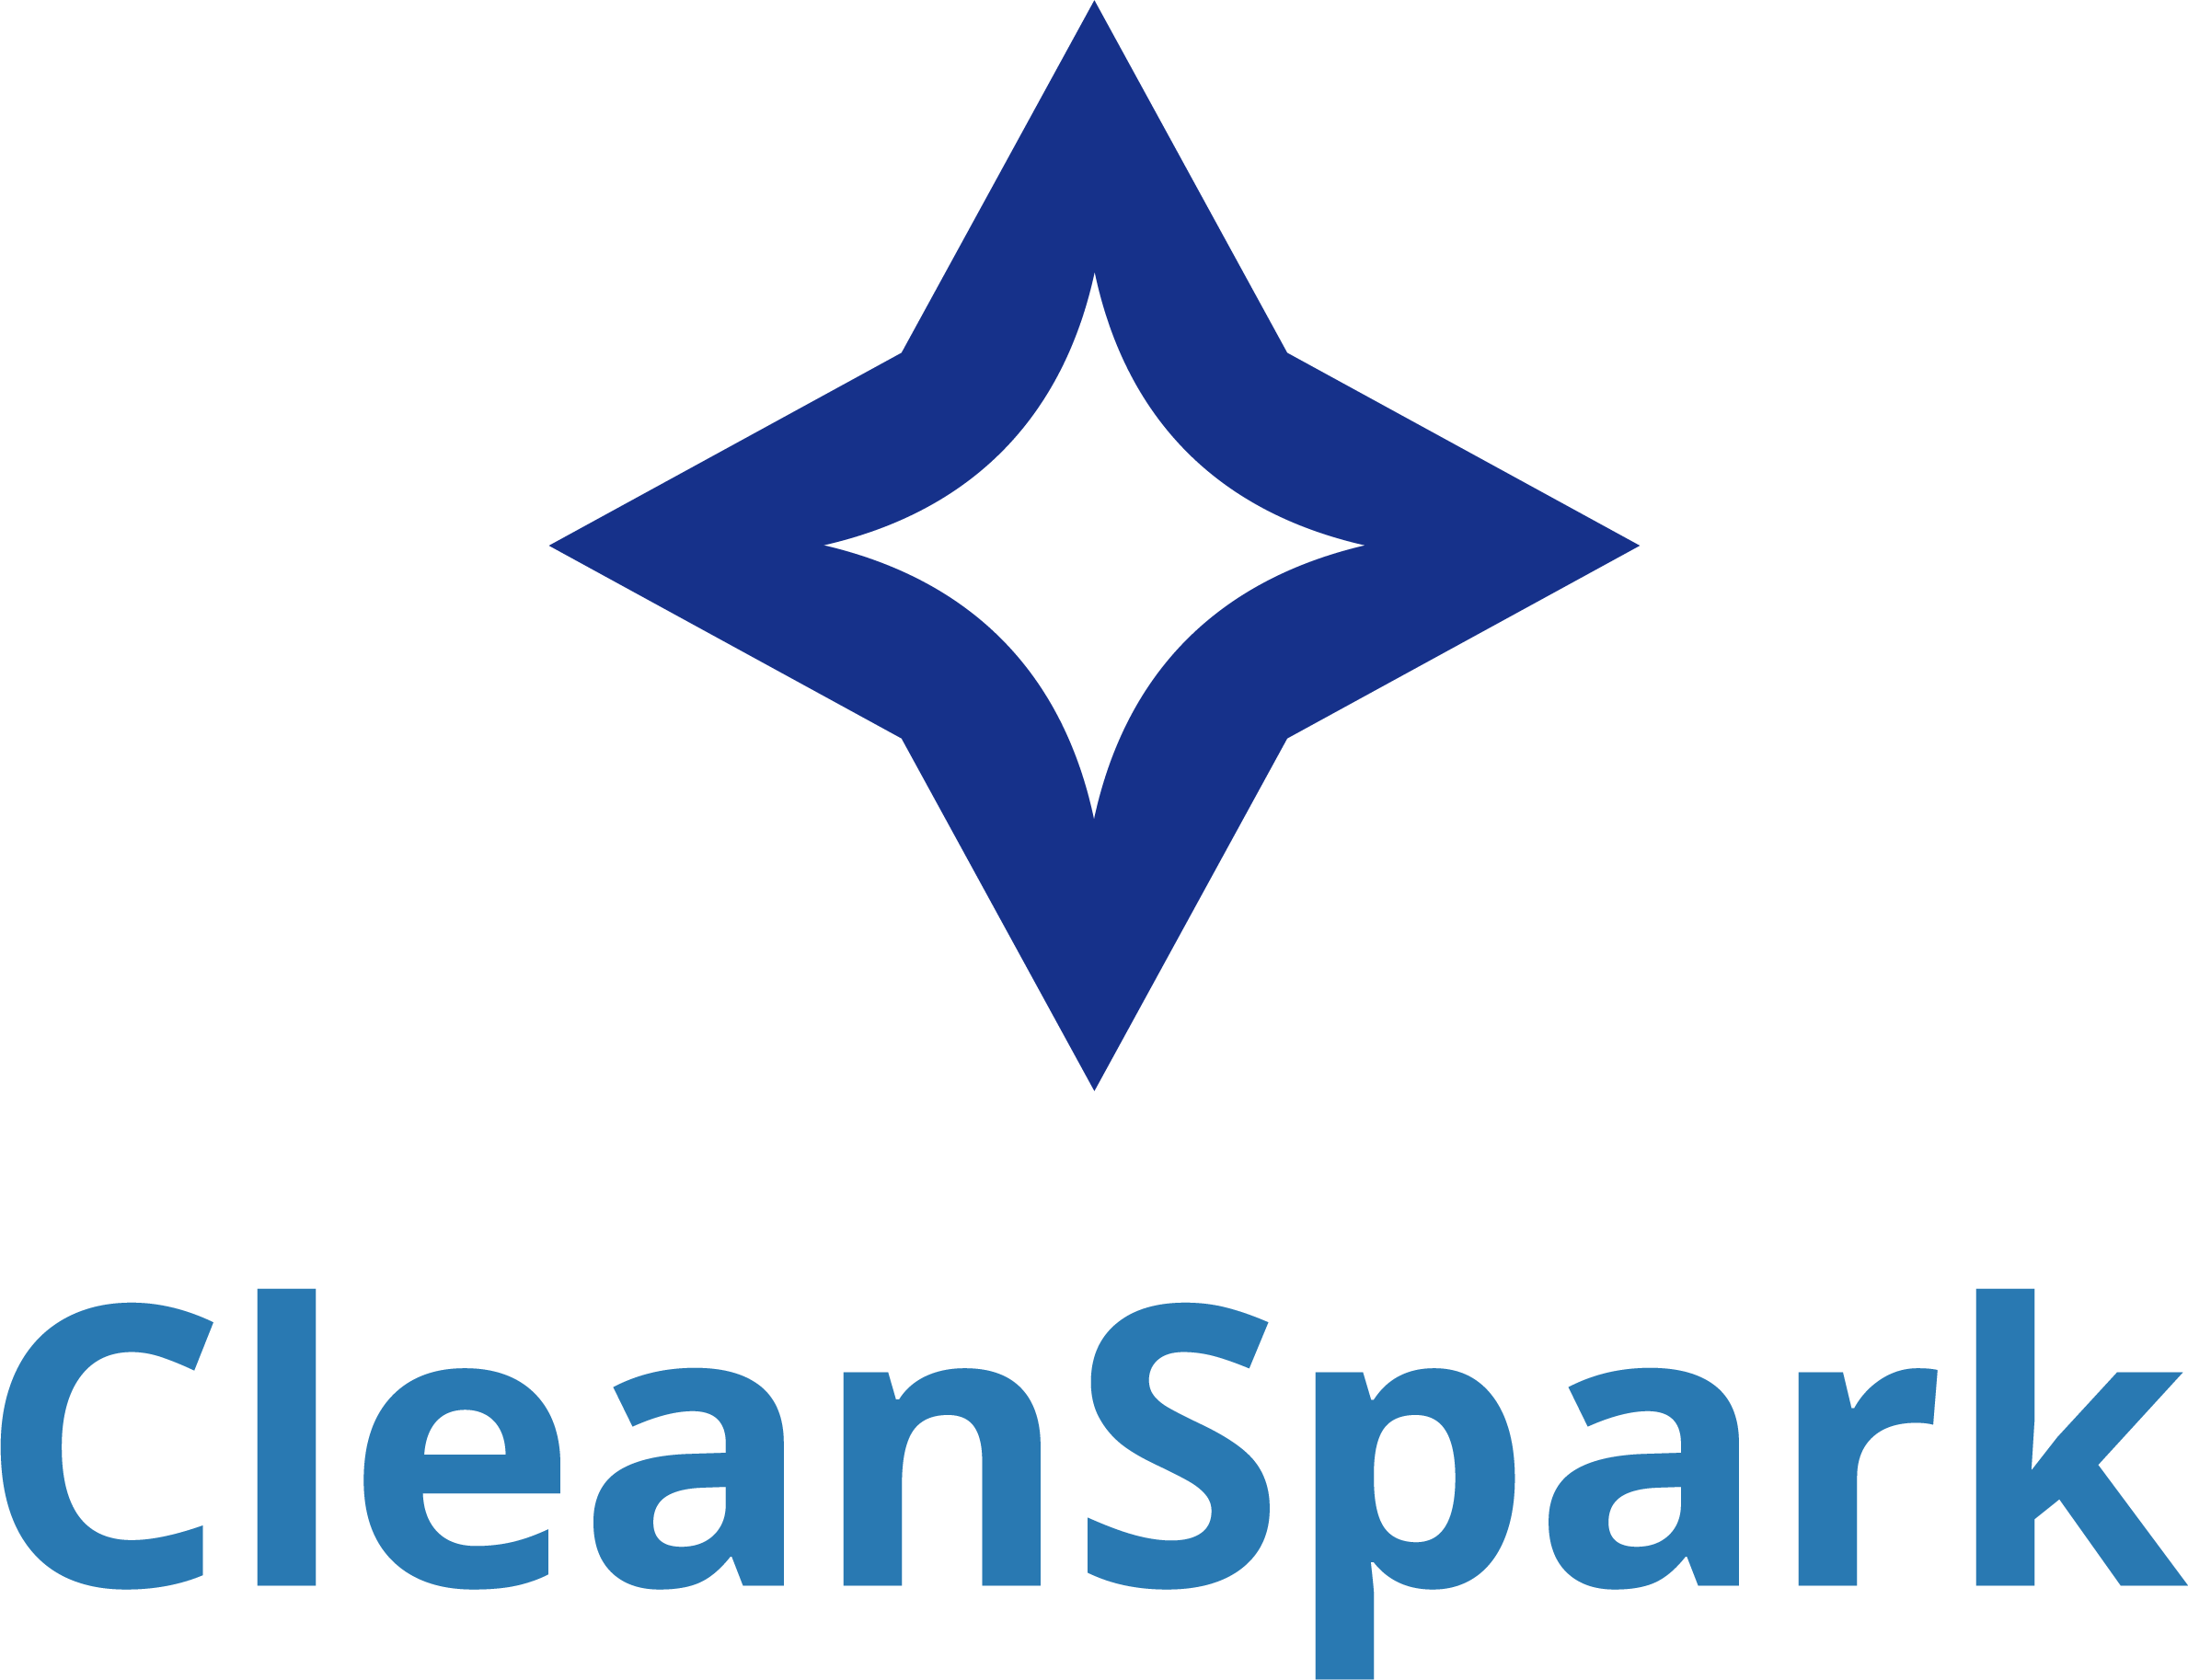 CleanSpark Announces